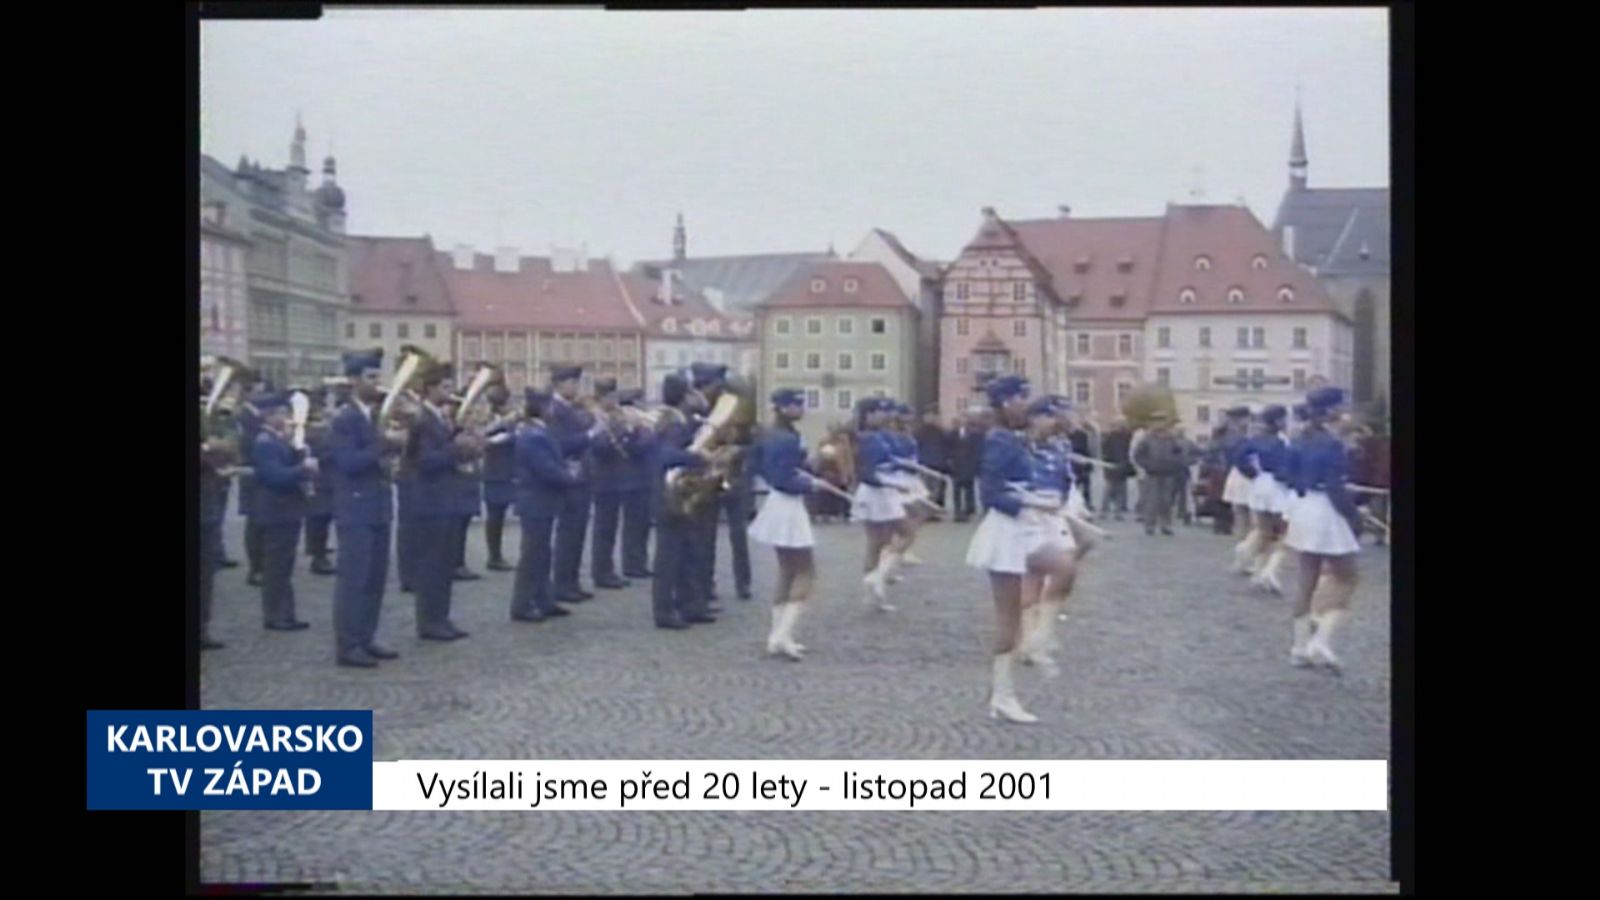 2001 – Cheb: Lidé si připomněli vznik Československa (TV Západ)